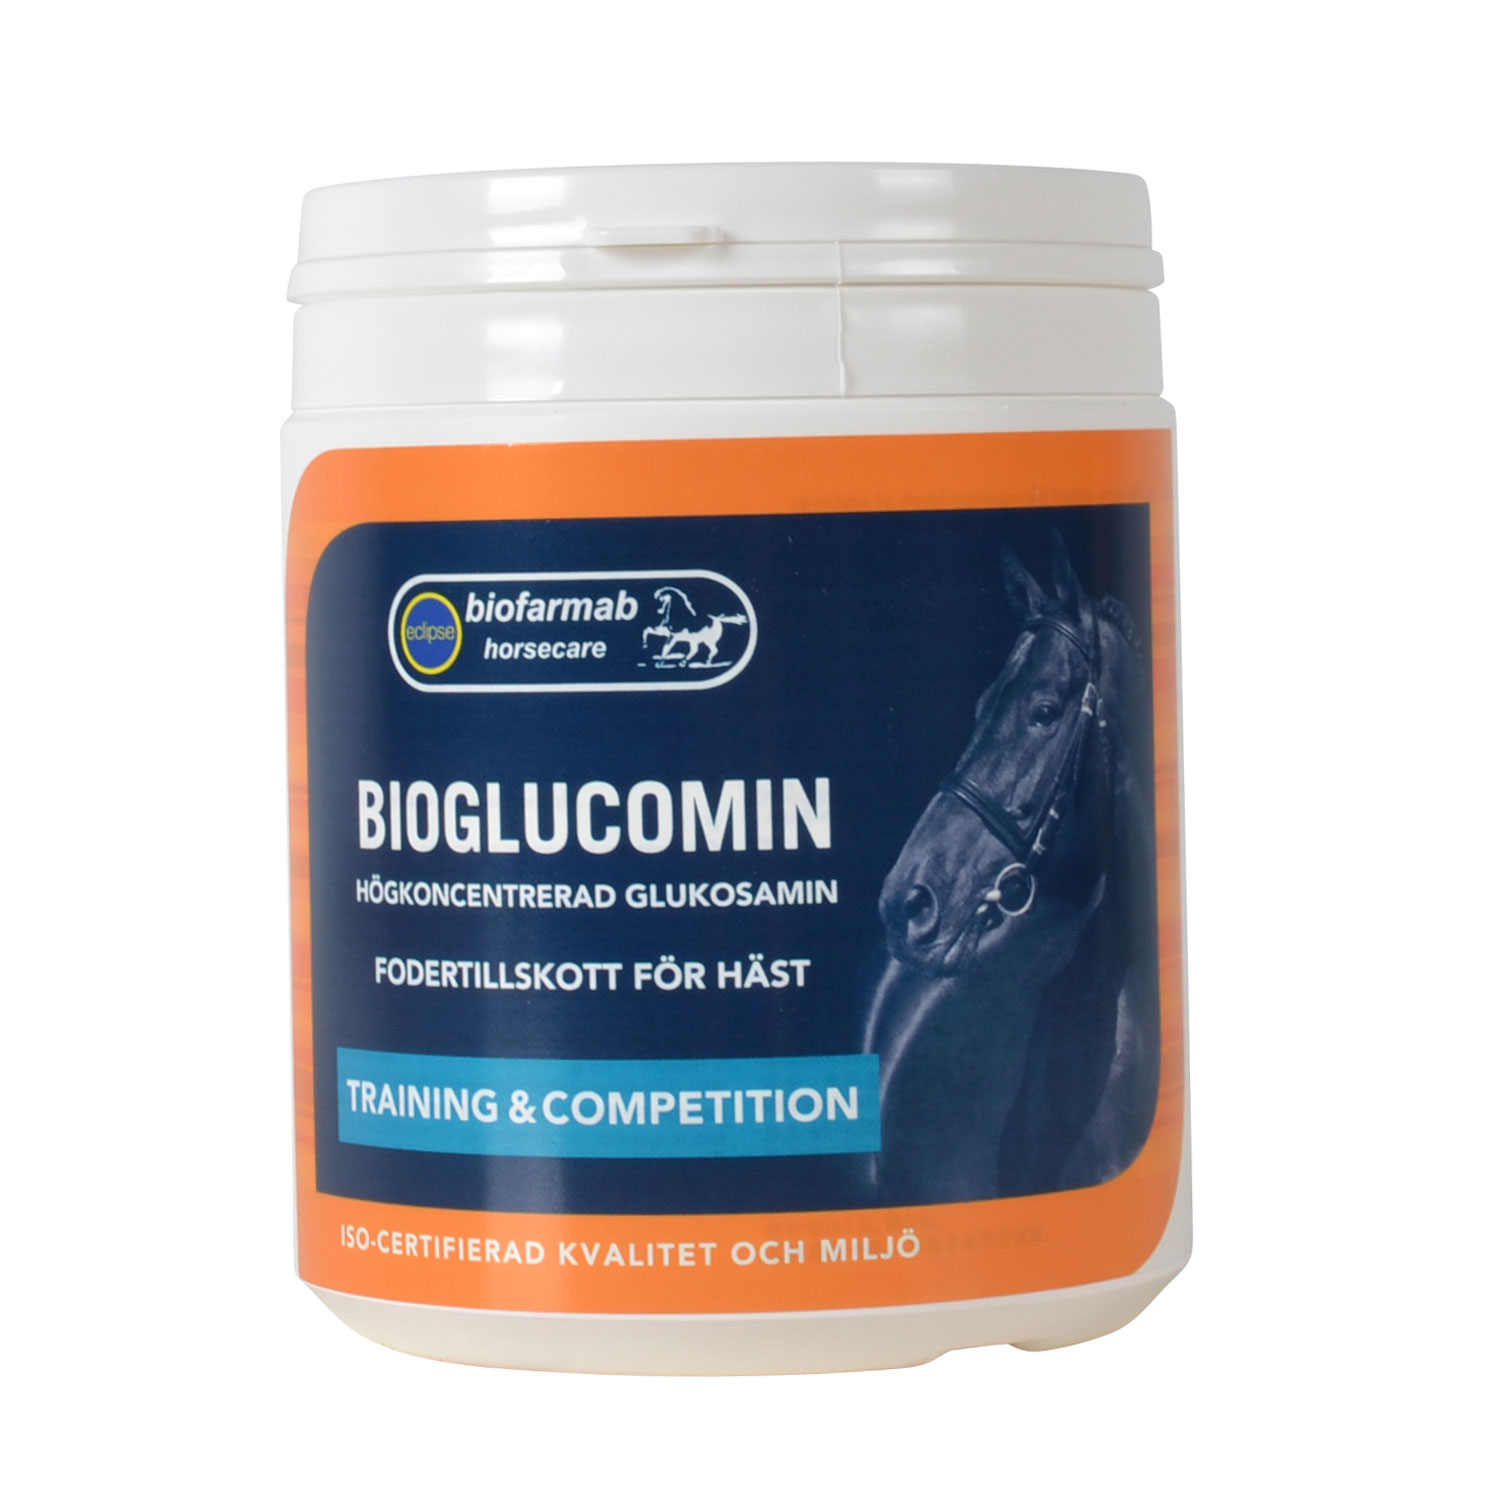 Bio glucomin 450 g